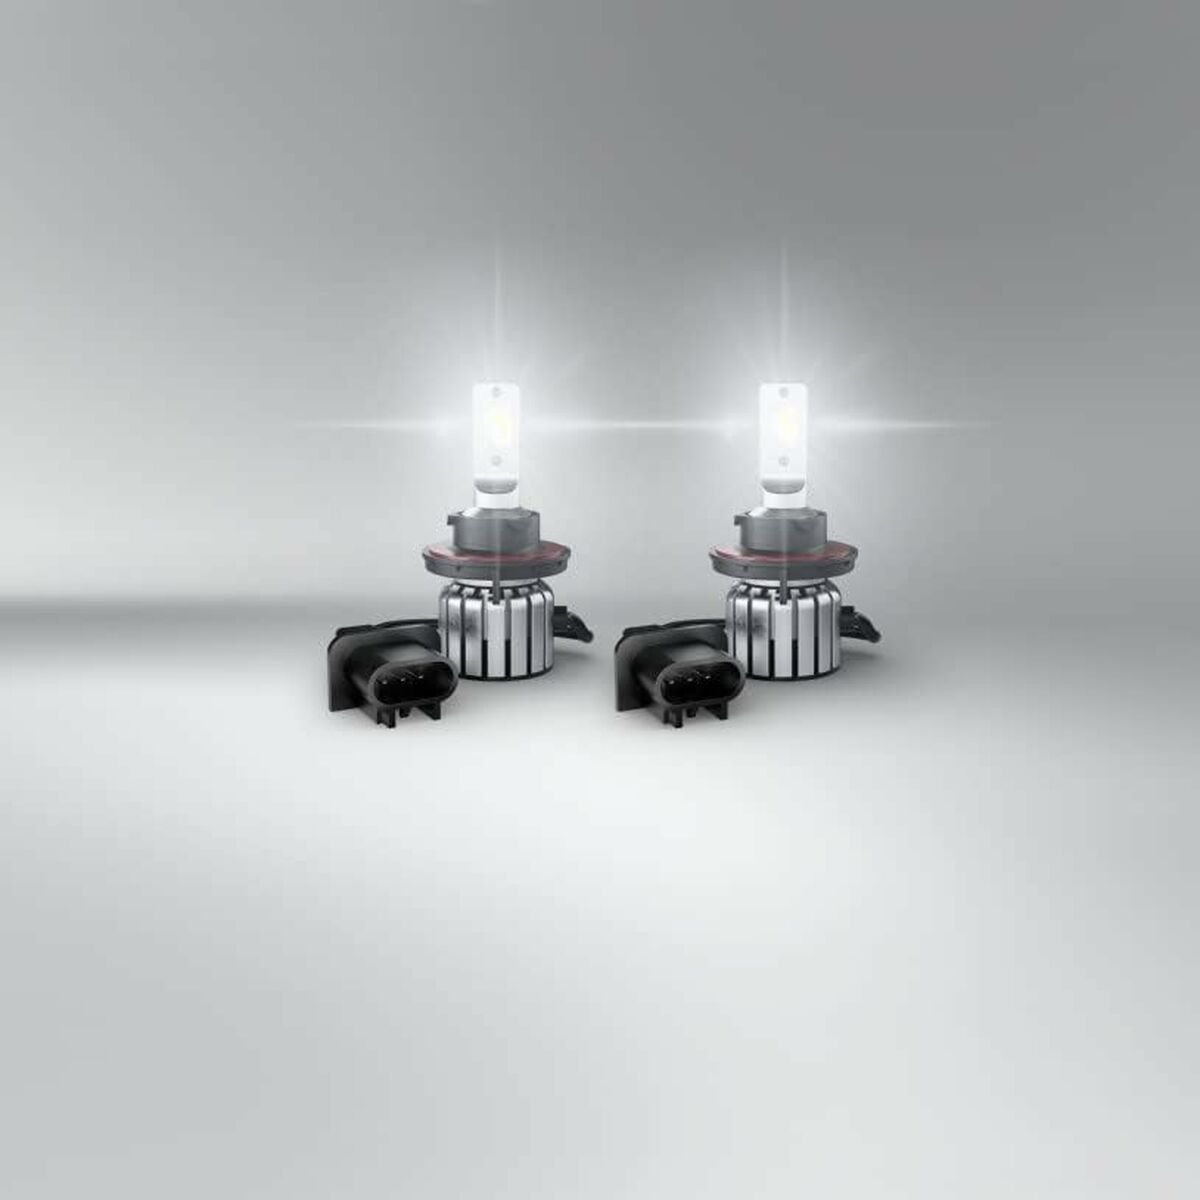 Lâmpada para carro Osram LEDriving HL Bright H13 15 W 12 V 6000 K